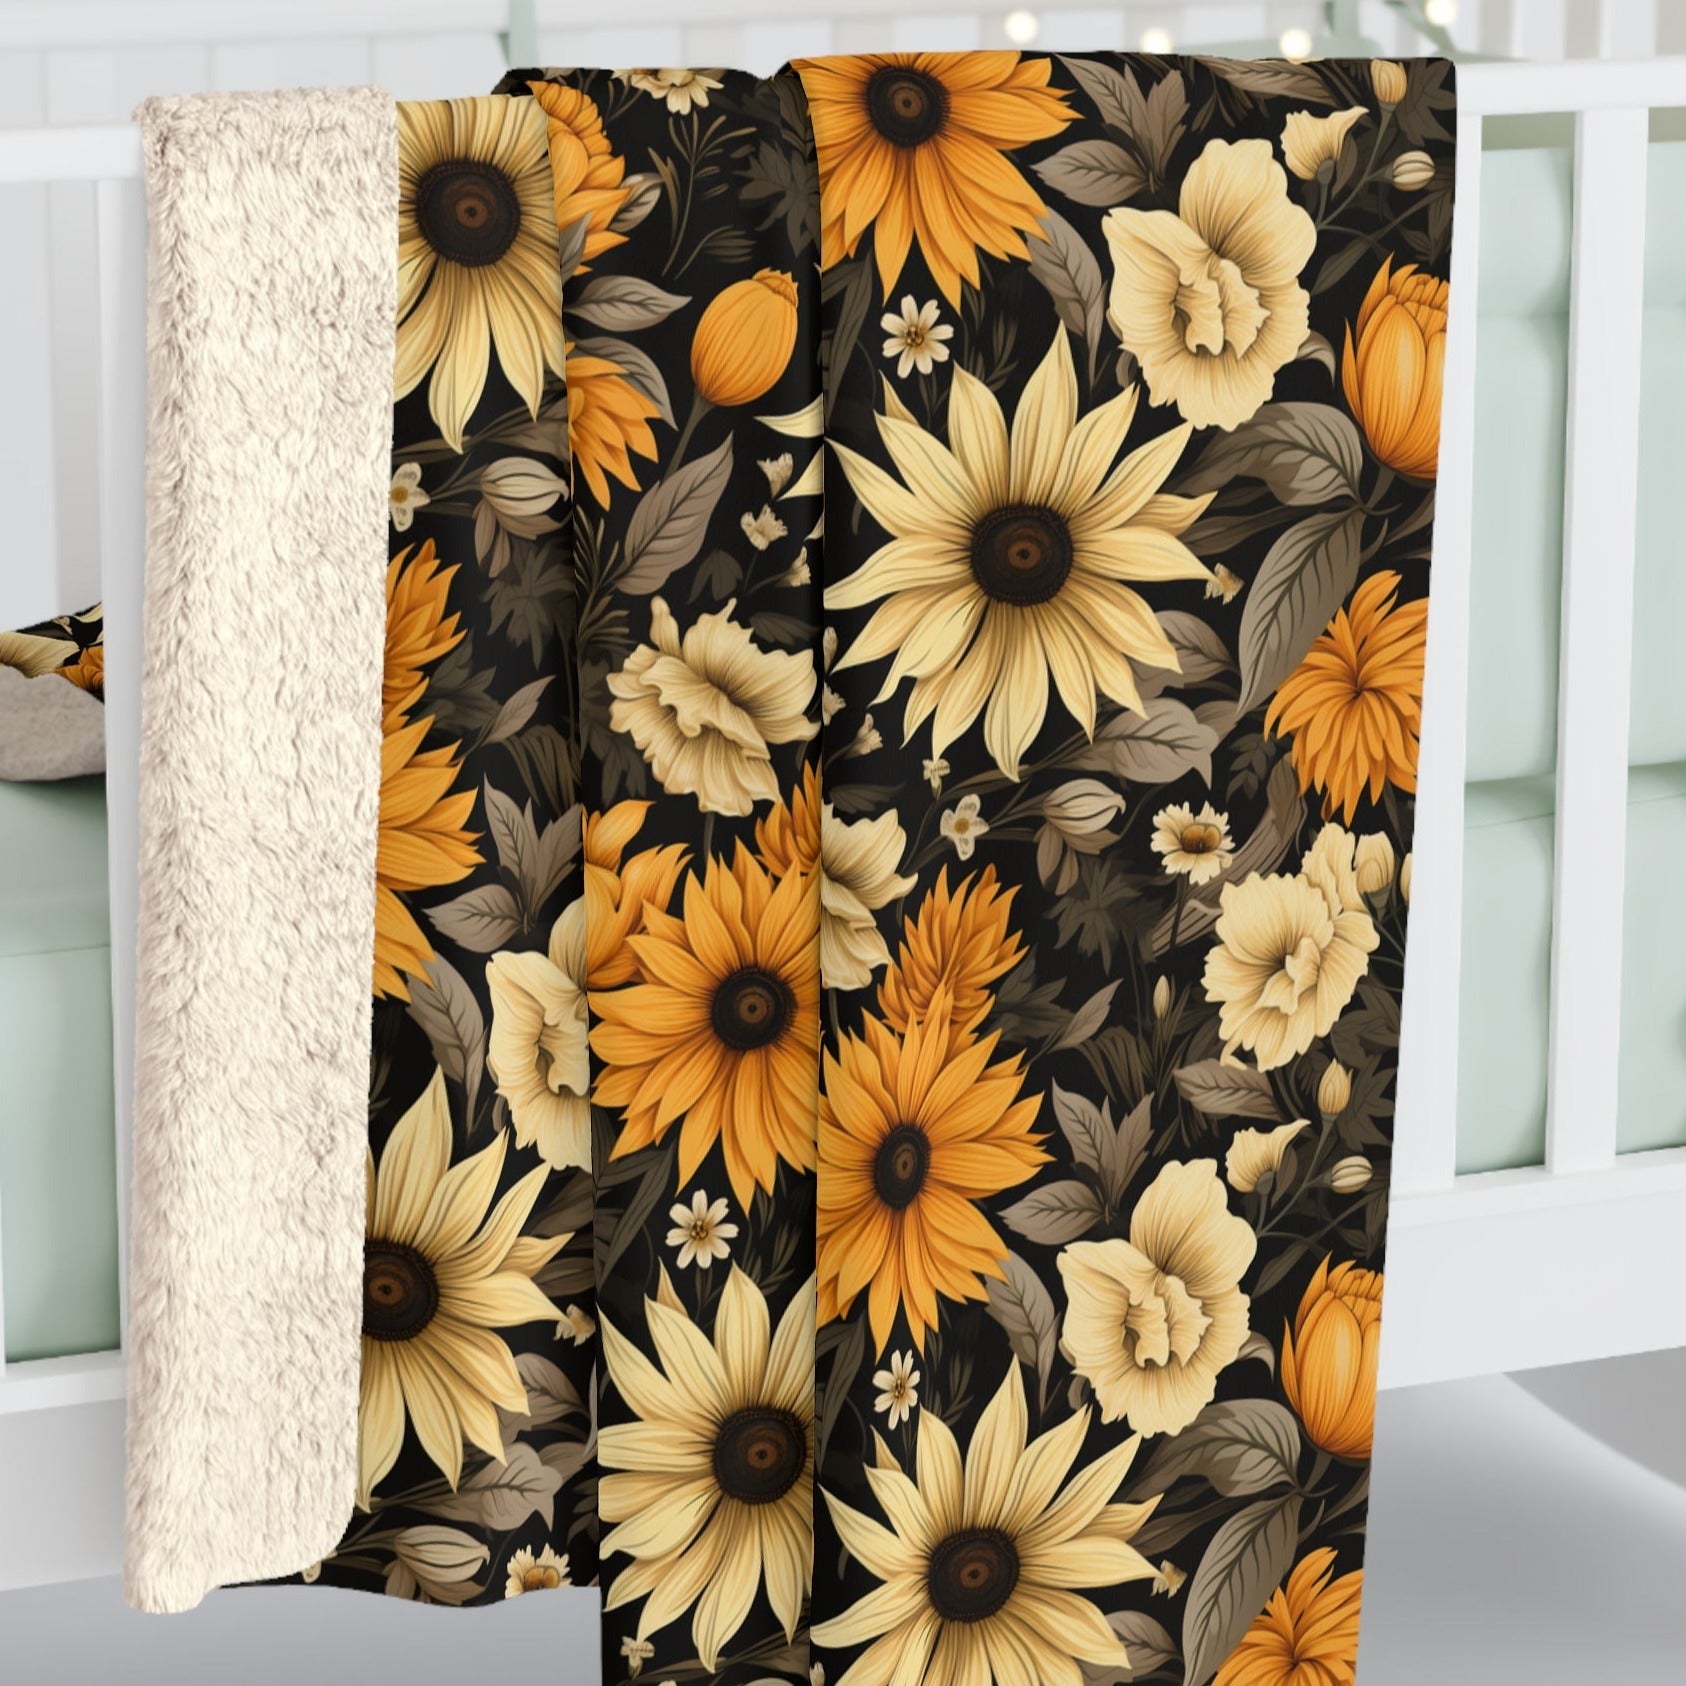 Forbidden Sunflower Blanket in Sherpa or Velveteen Plush